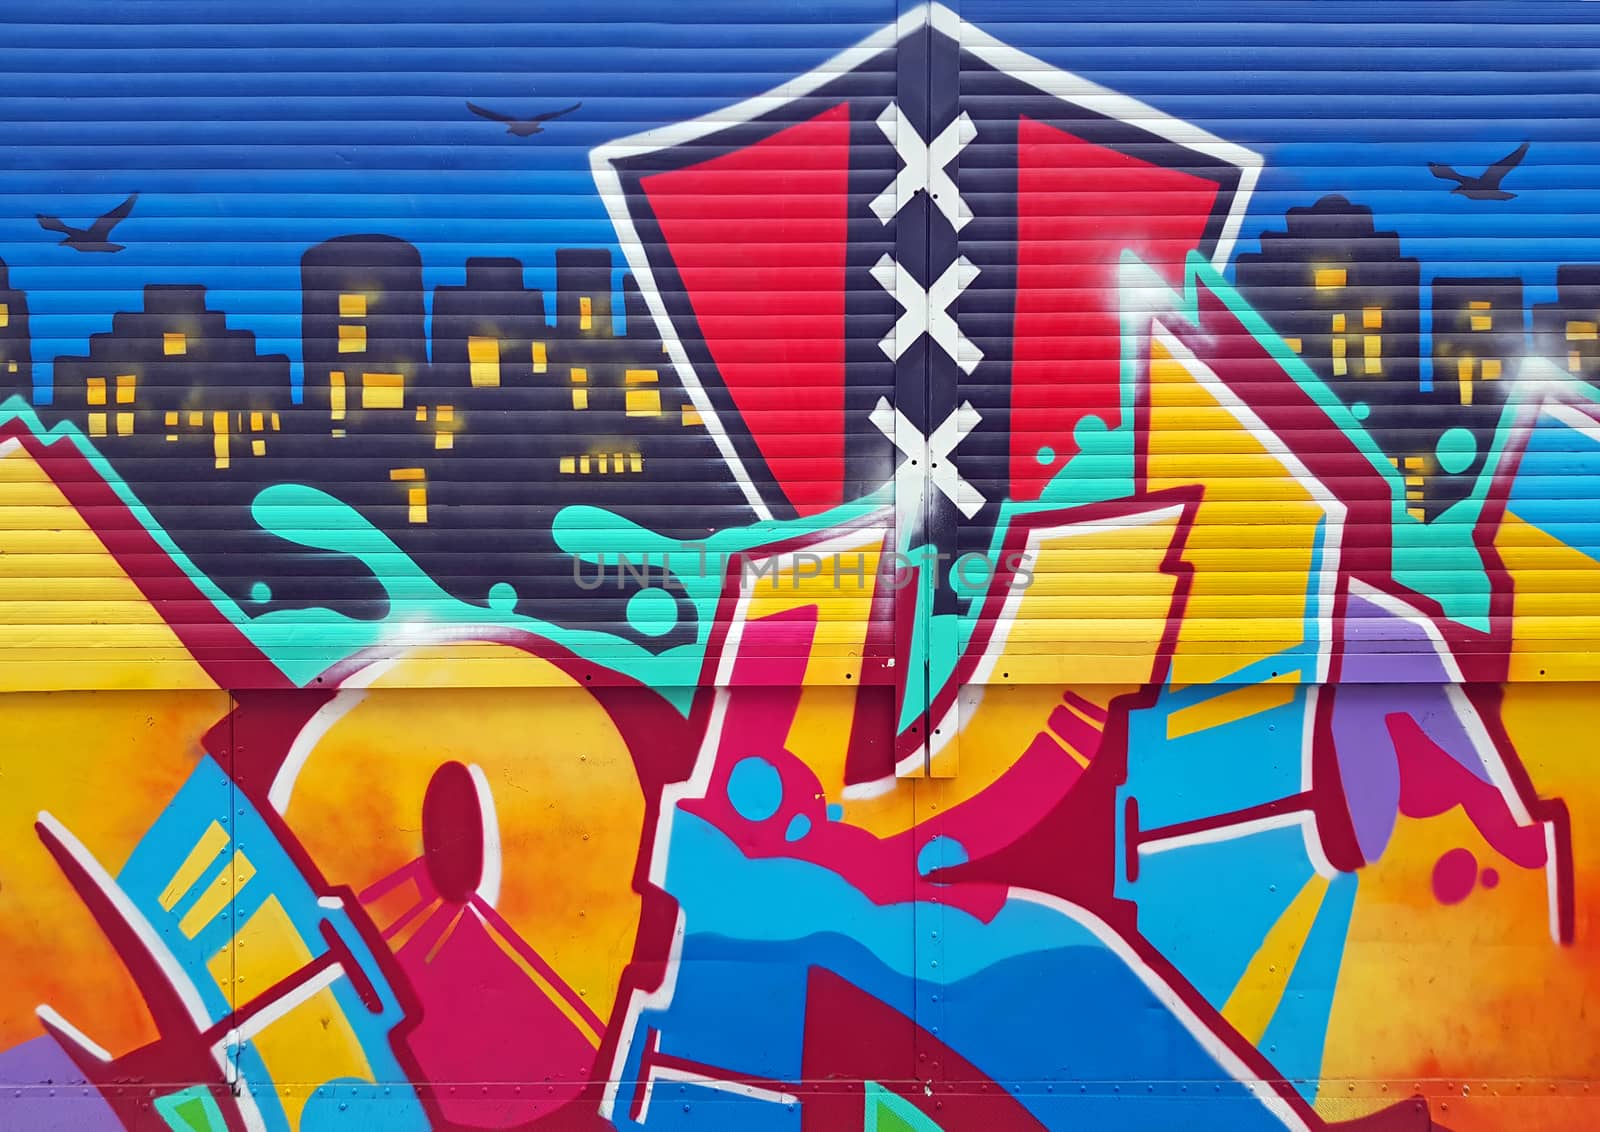 Graffiti in Amsterdam Netherlands by devy